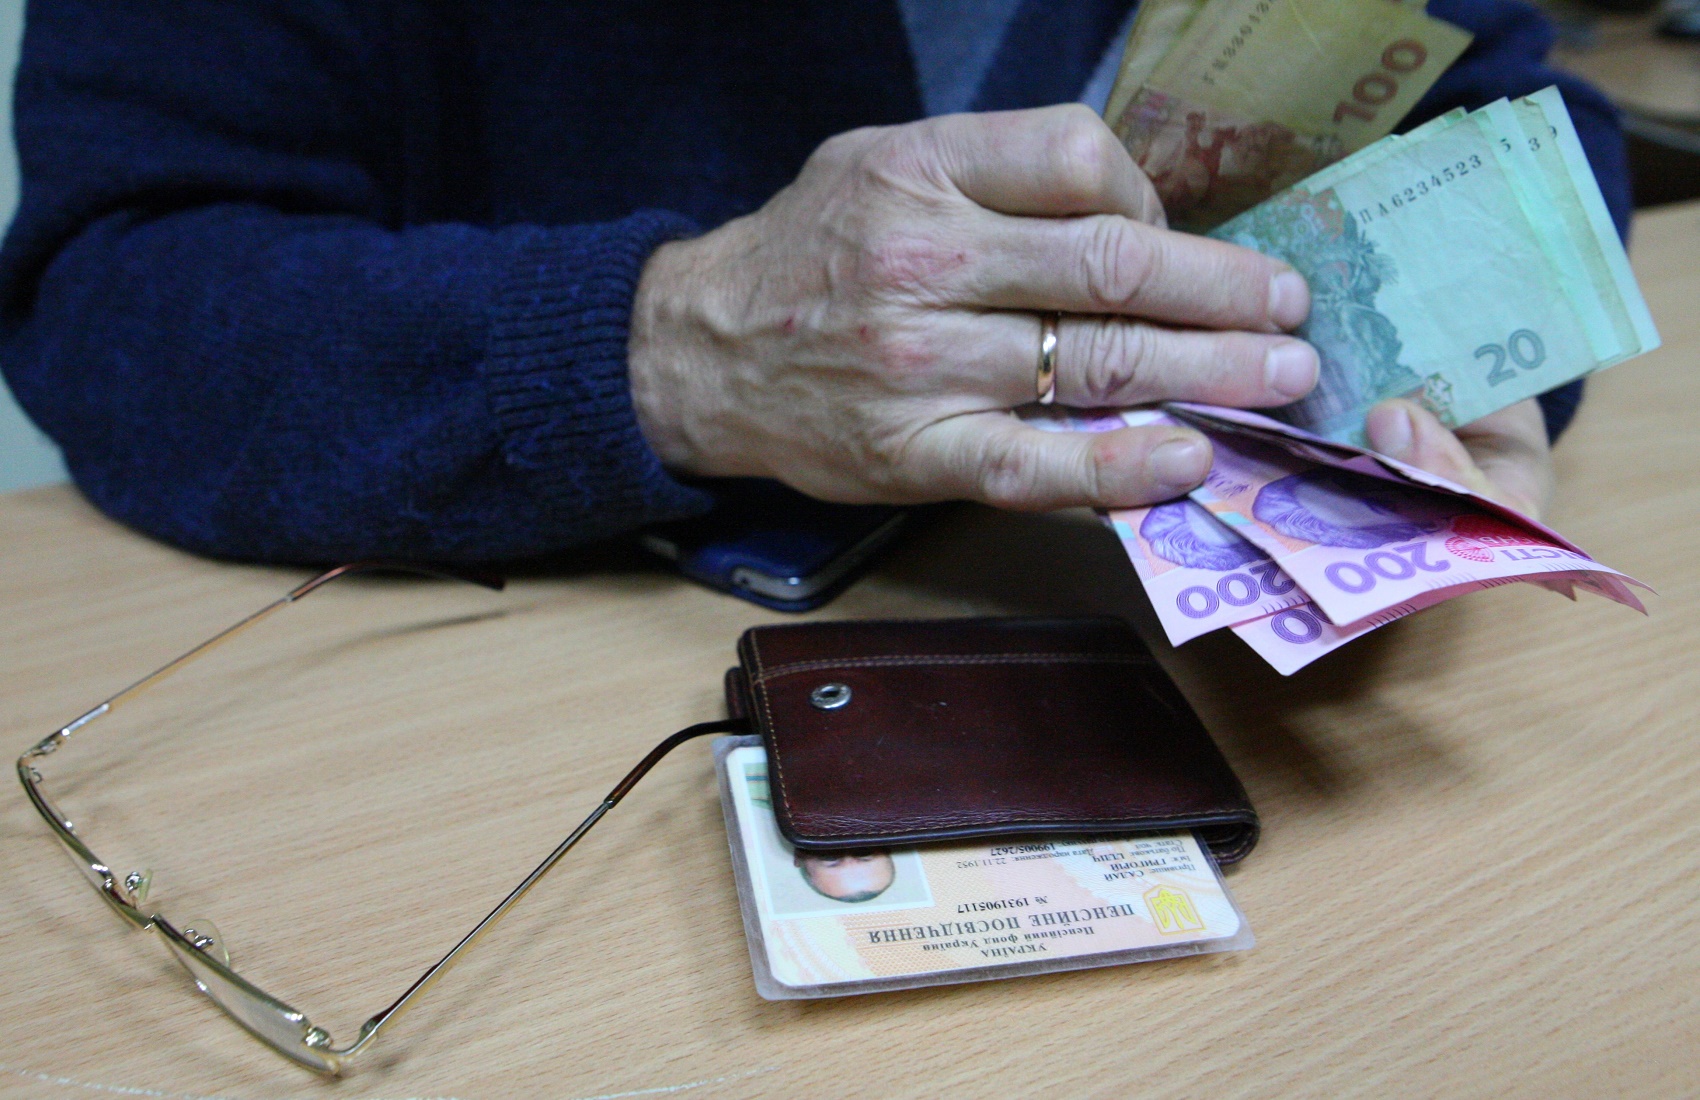 В Україні зросла мінімальна пенсія